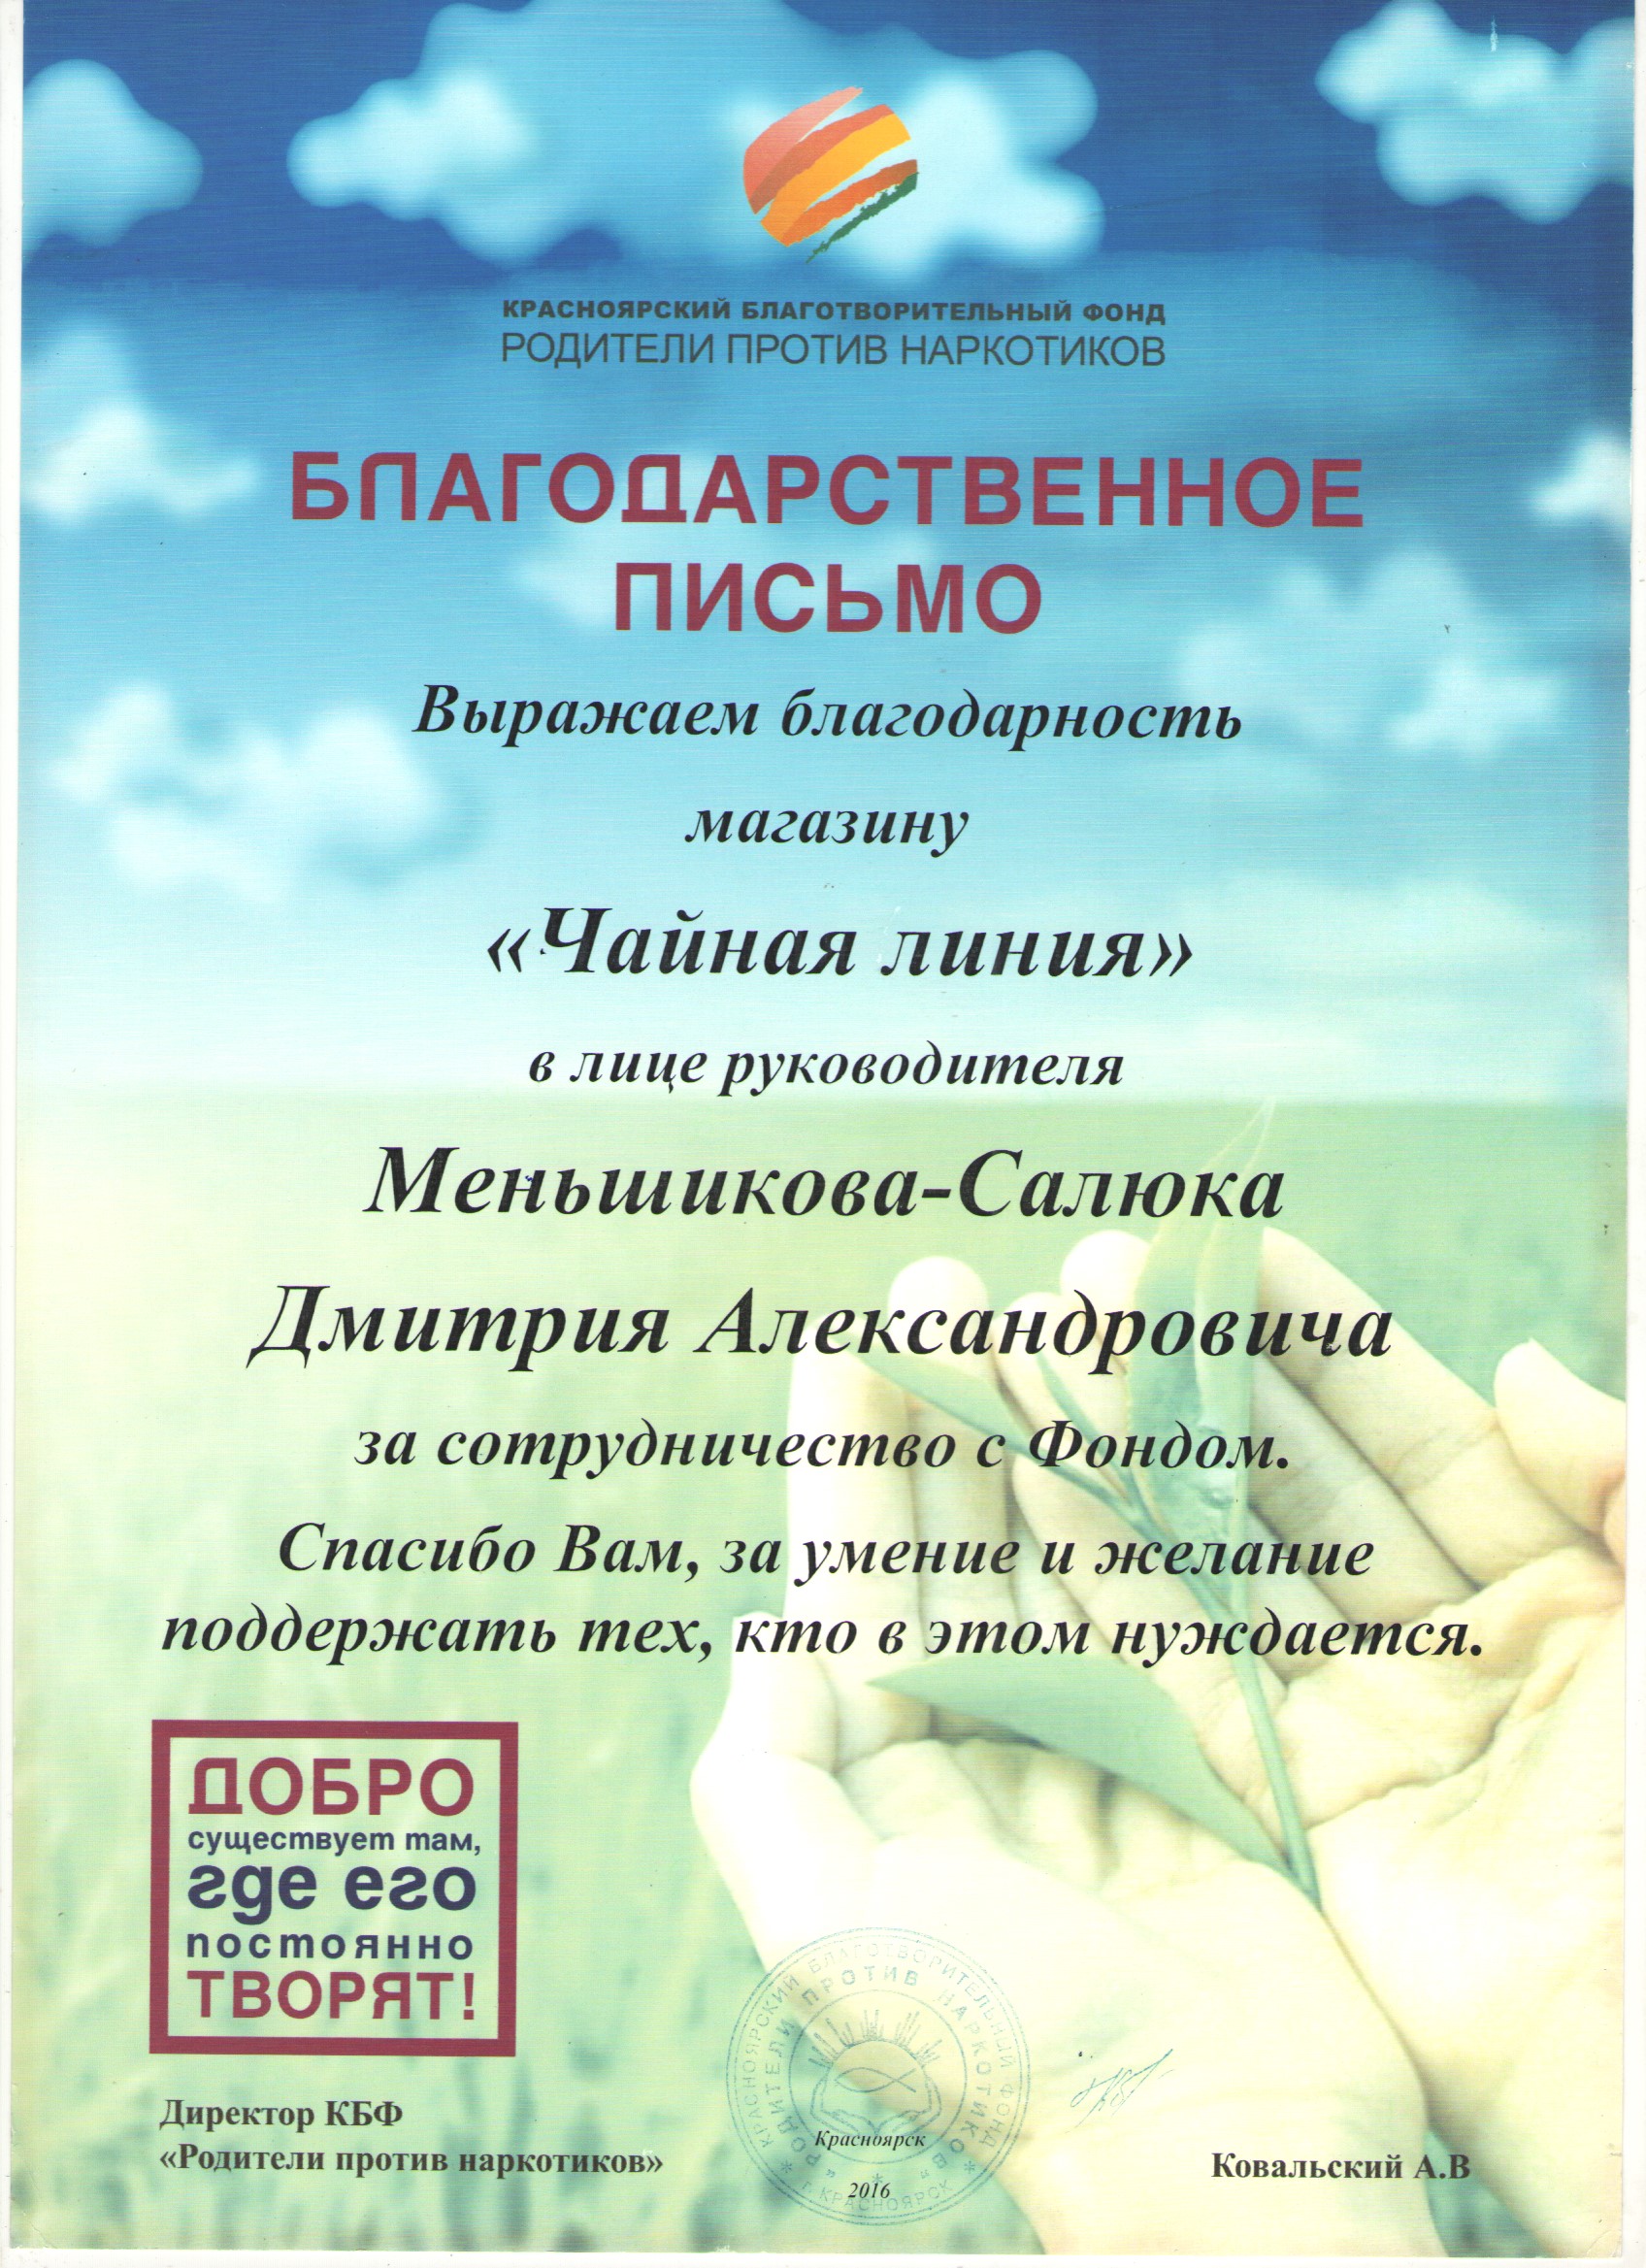 Красноярский благотворительный фонд "Родители против наркотиков"